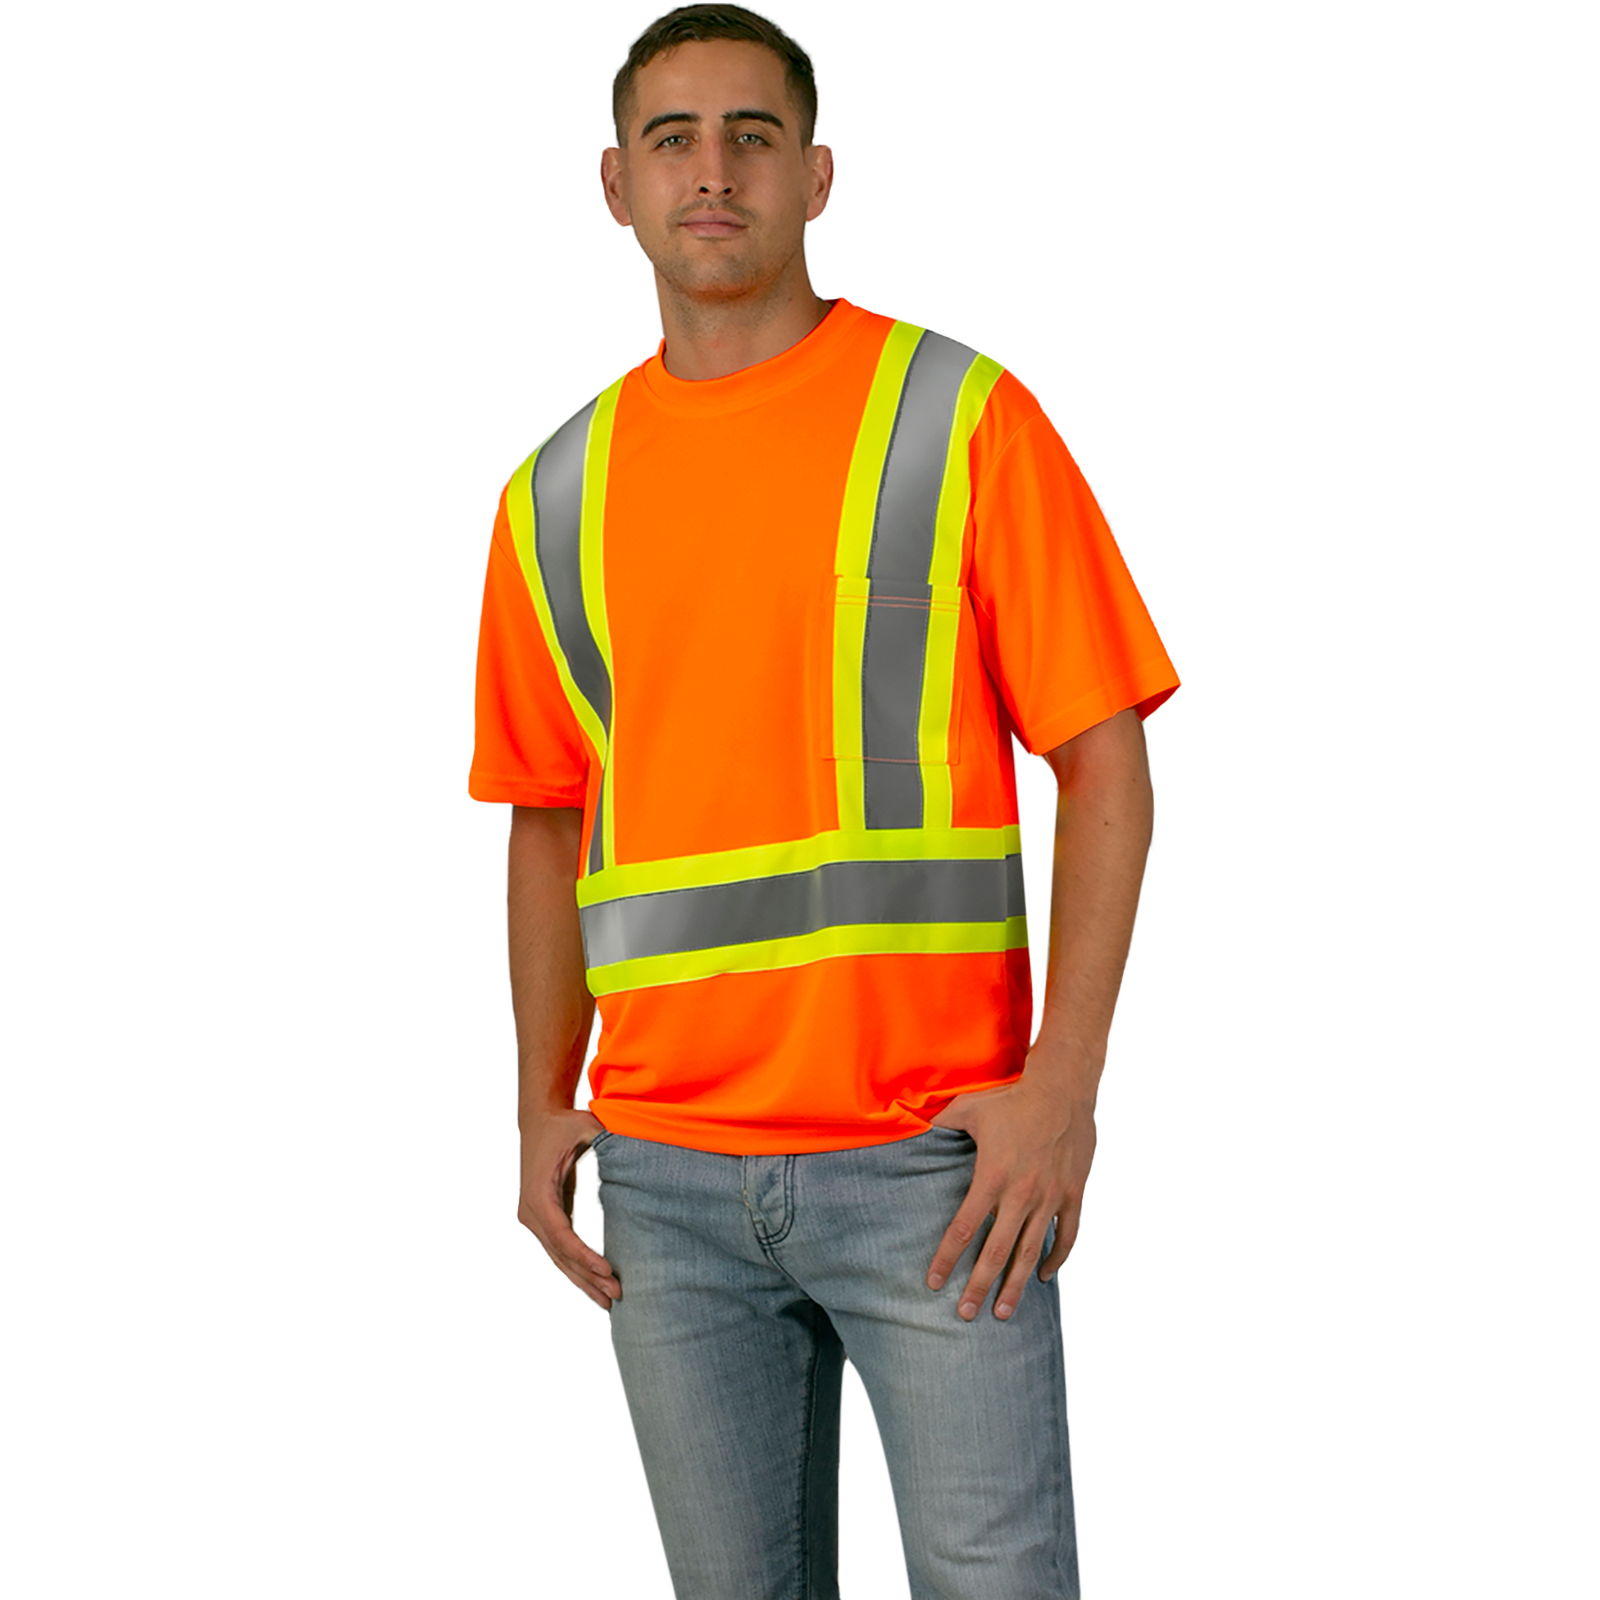 Man wearing an orange short sleeve safety work shirt